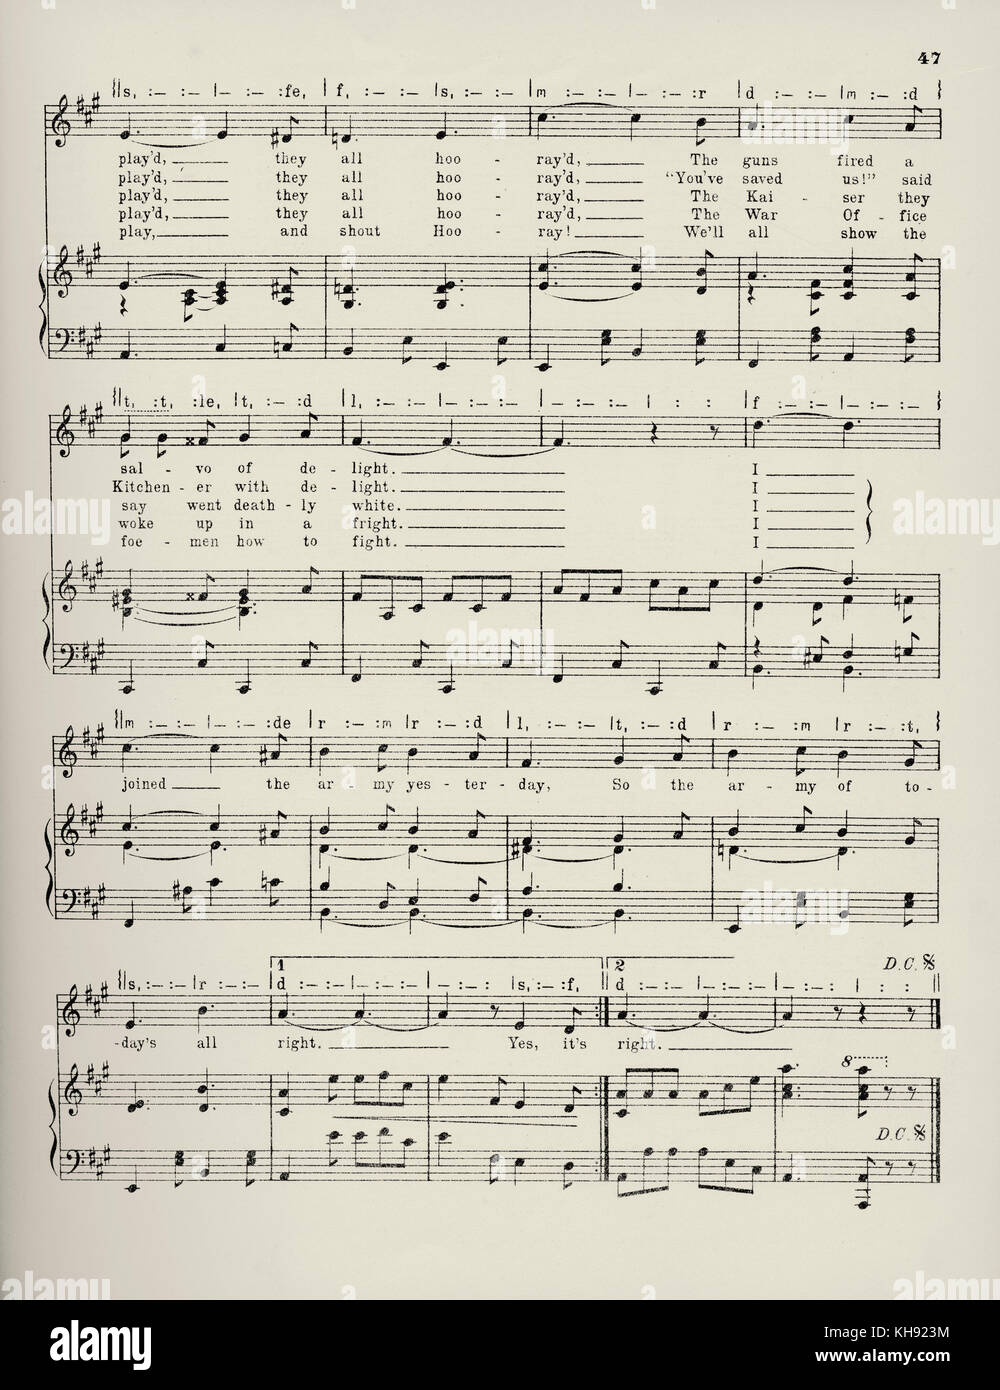 "Die Armee von Zu-Tag's All Right'-Song geschrieben von Fred W. Leigh und komponiert von Kenneth Lyle. 1914. Beliebte während des Zweiten Weltkrieges 1. Seite 4 von 4. Stockfoto